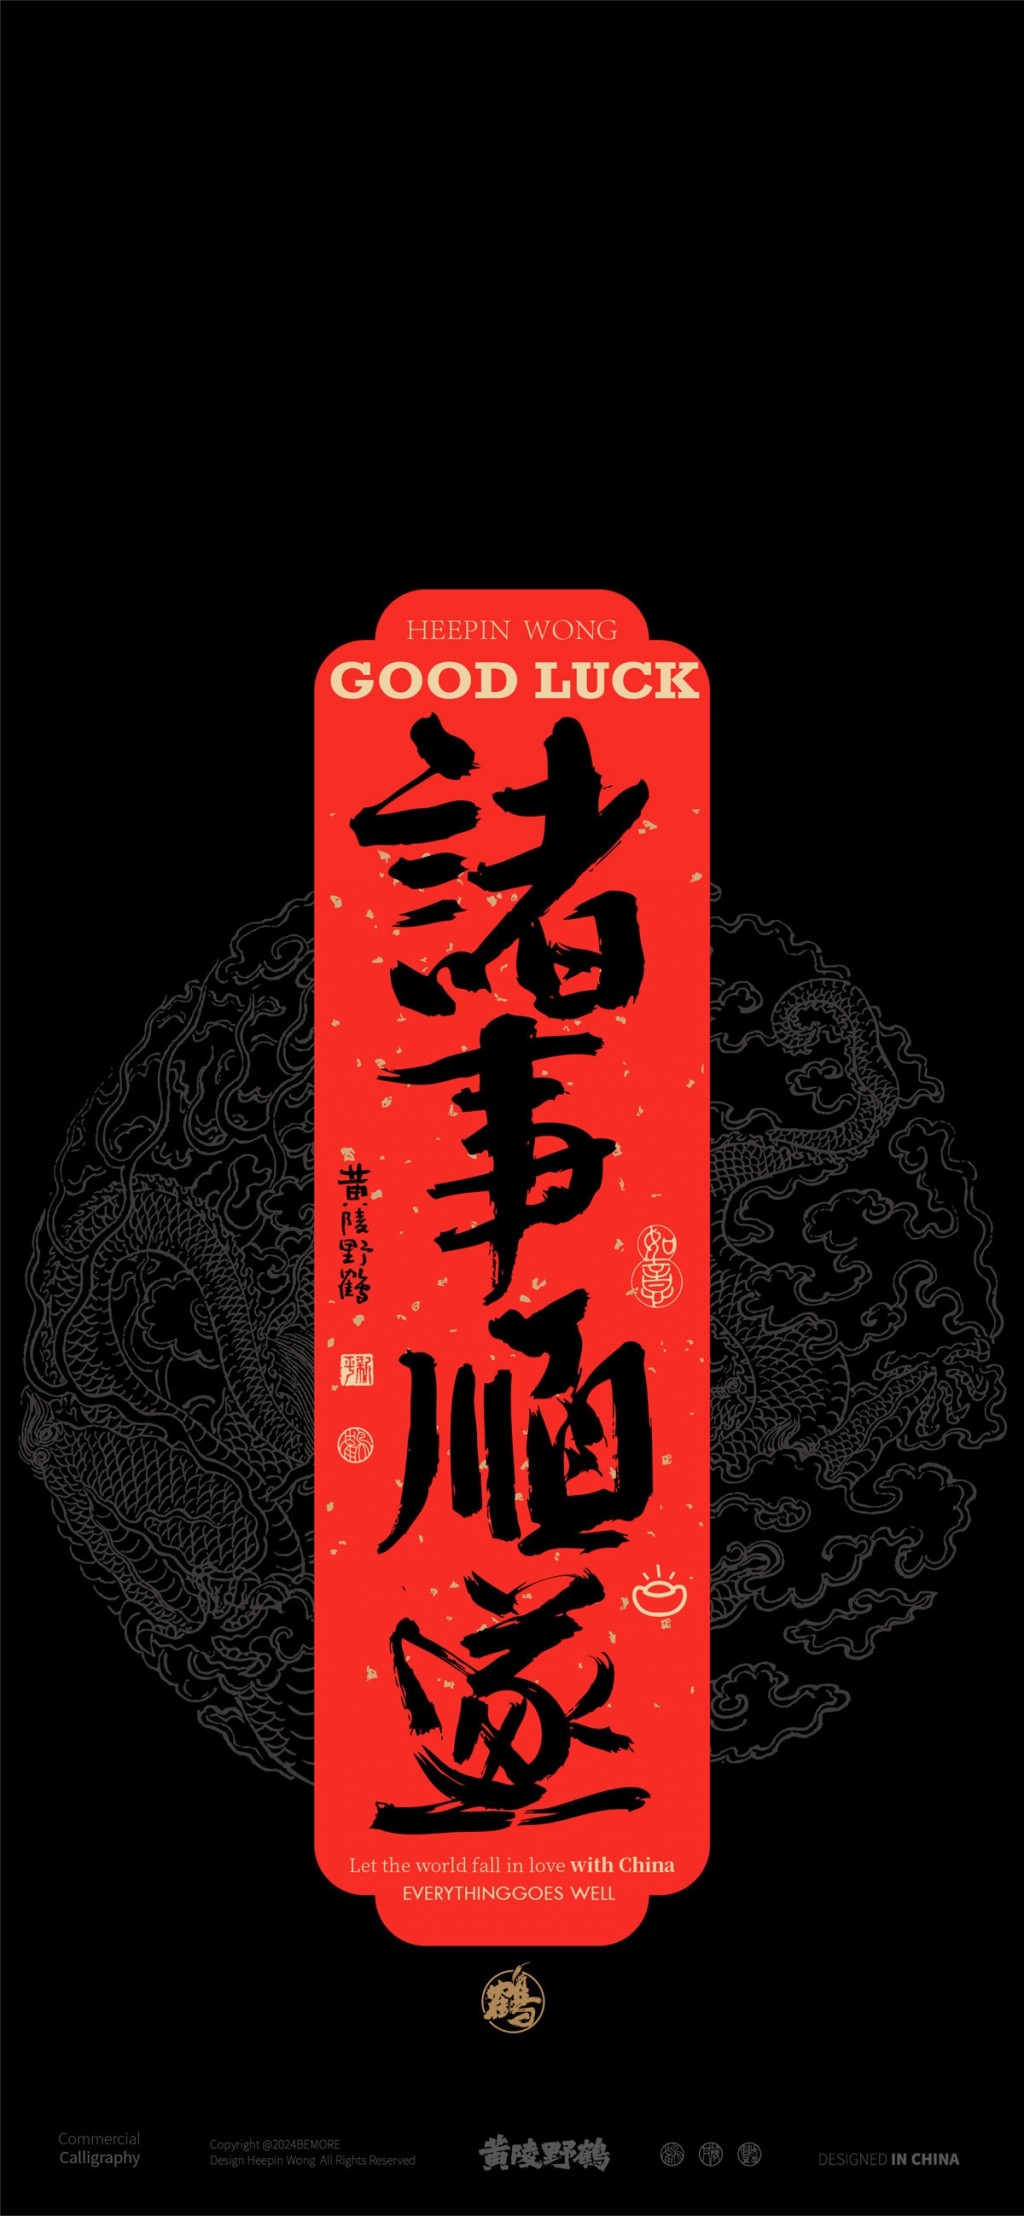 吉庆书法系列黑色背景手机壁纸